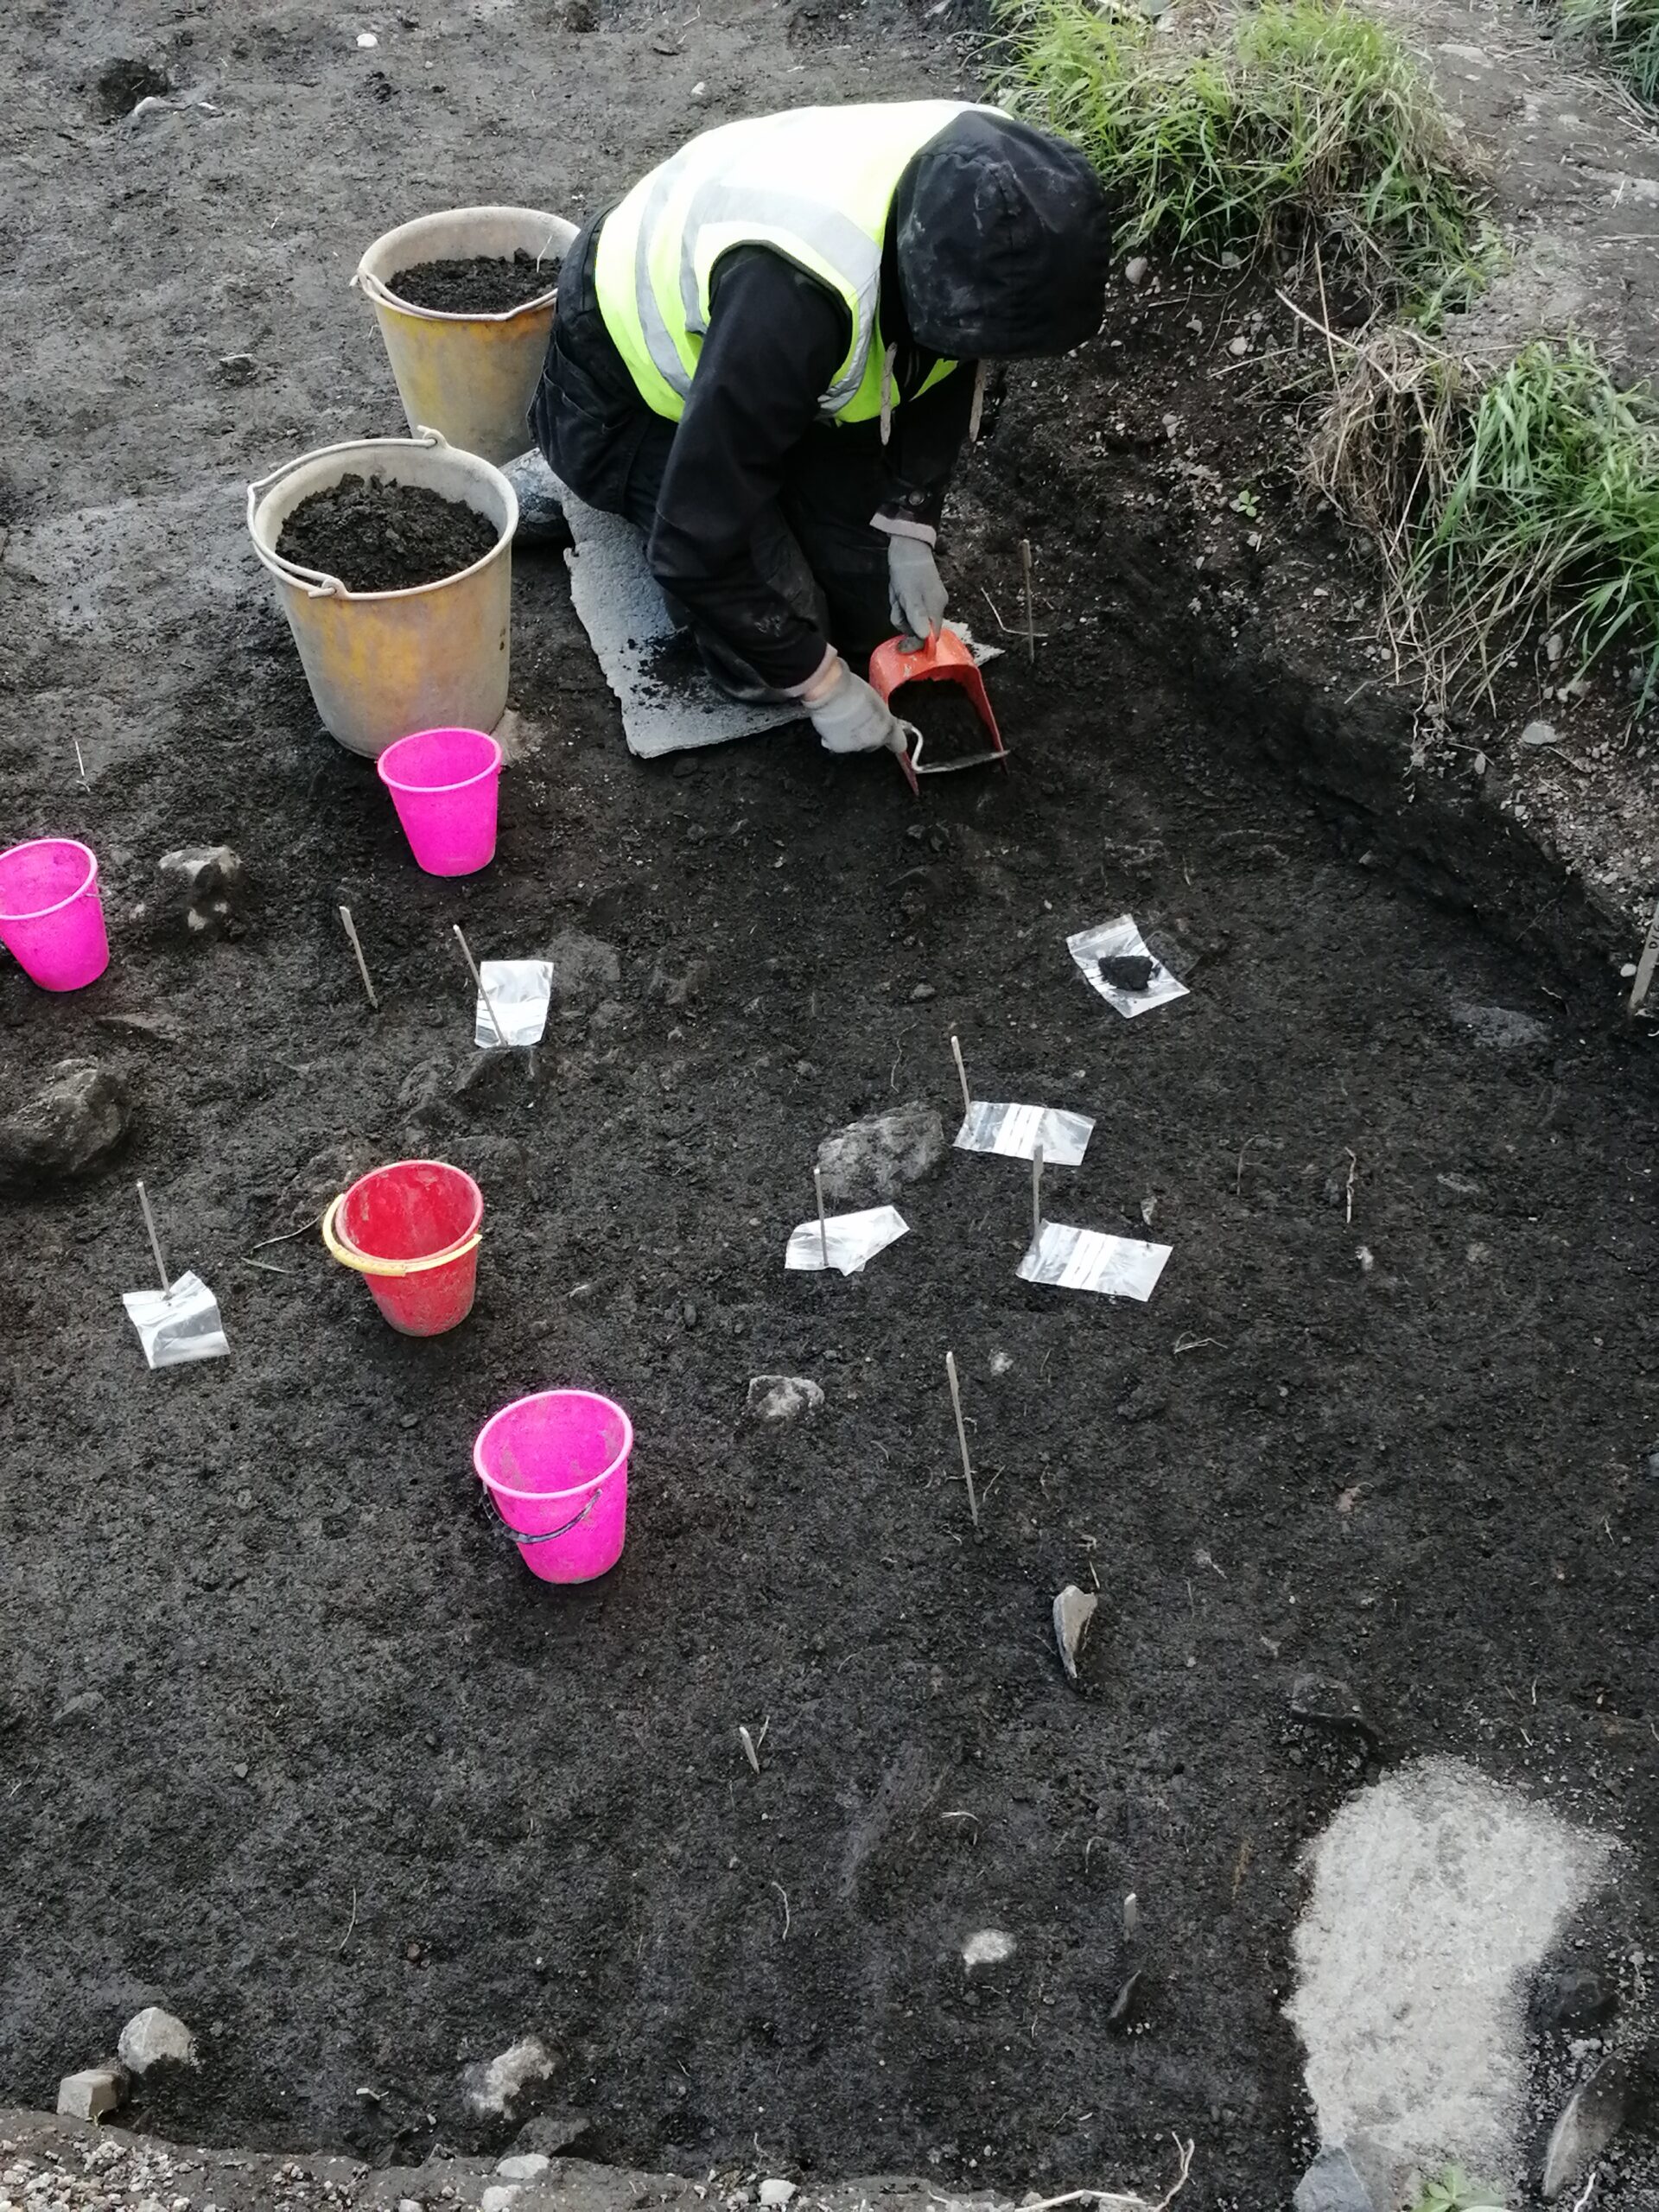 Arkeologi kaivamassa Tursiannotkossa